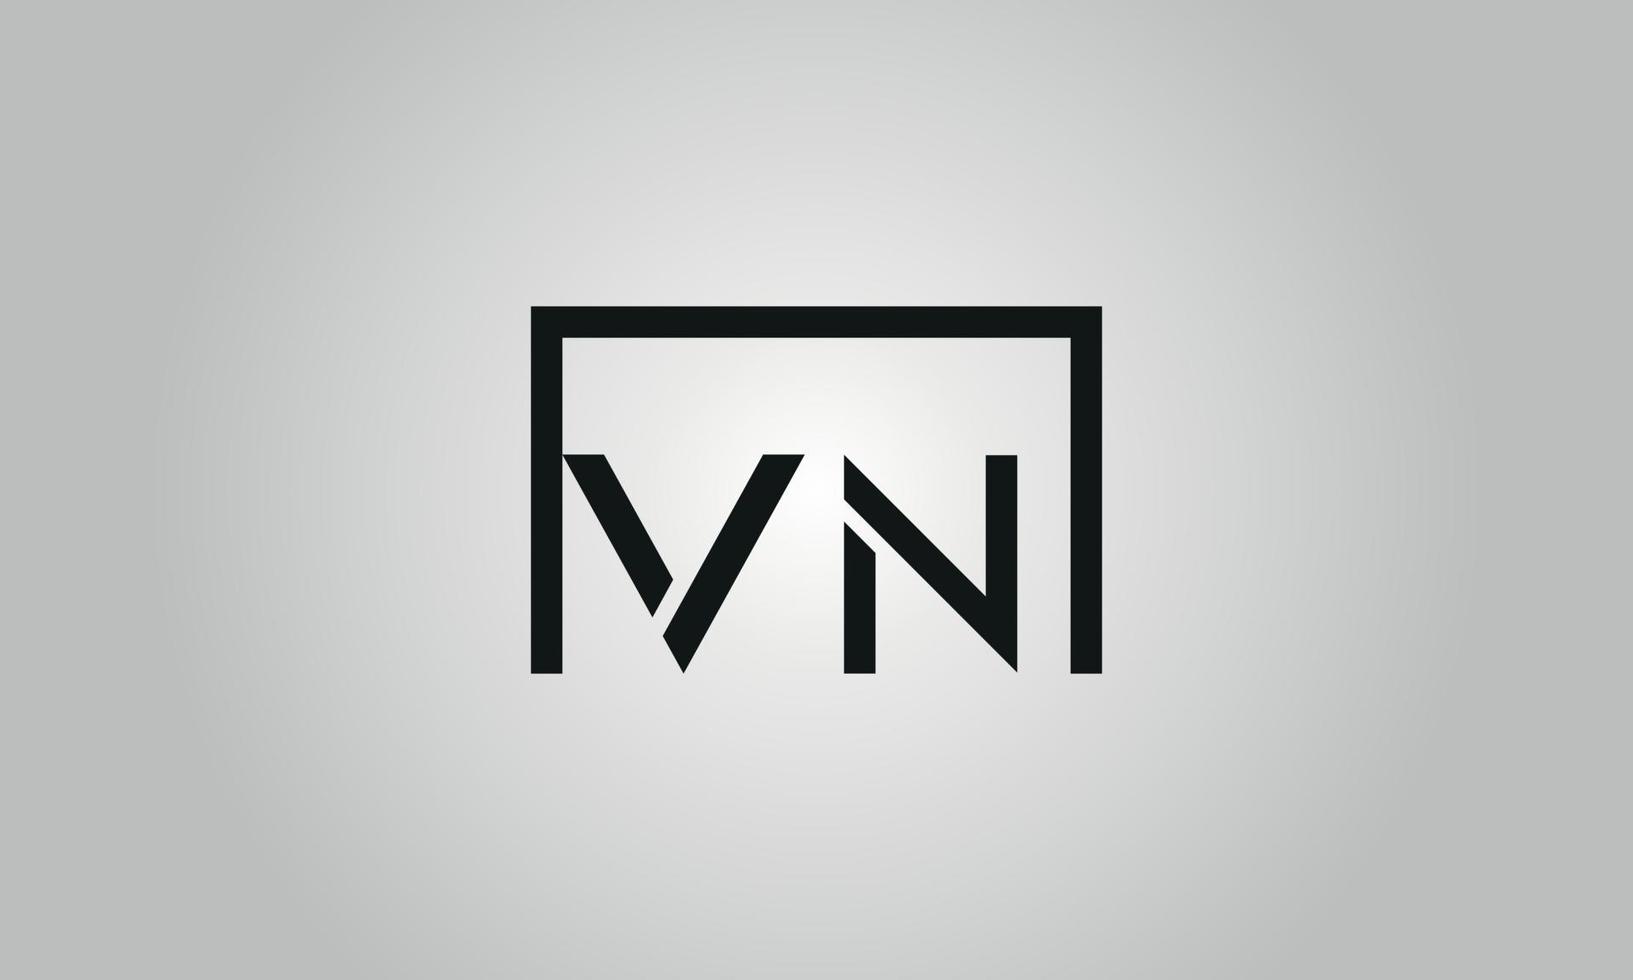 création de logo lettre vn. vnlogo avec forme carrée dans le modèle de vecteur gratuit de couleurs noires.